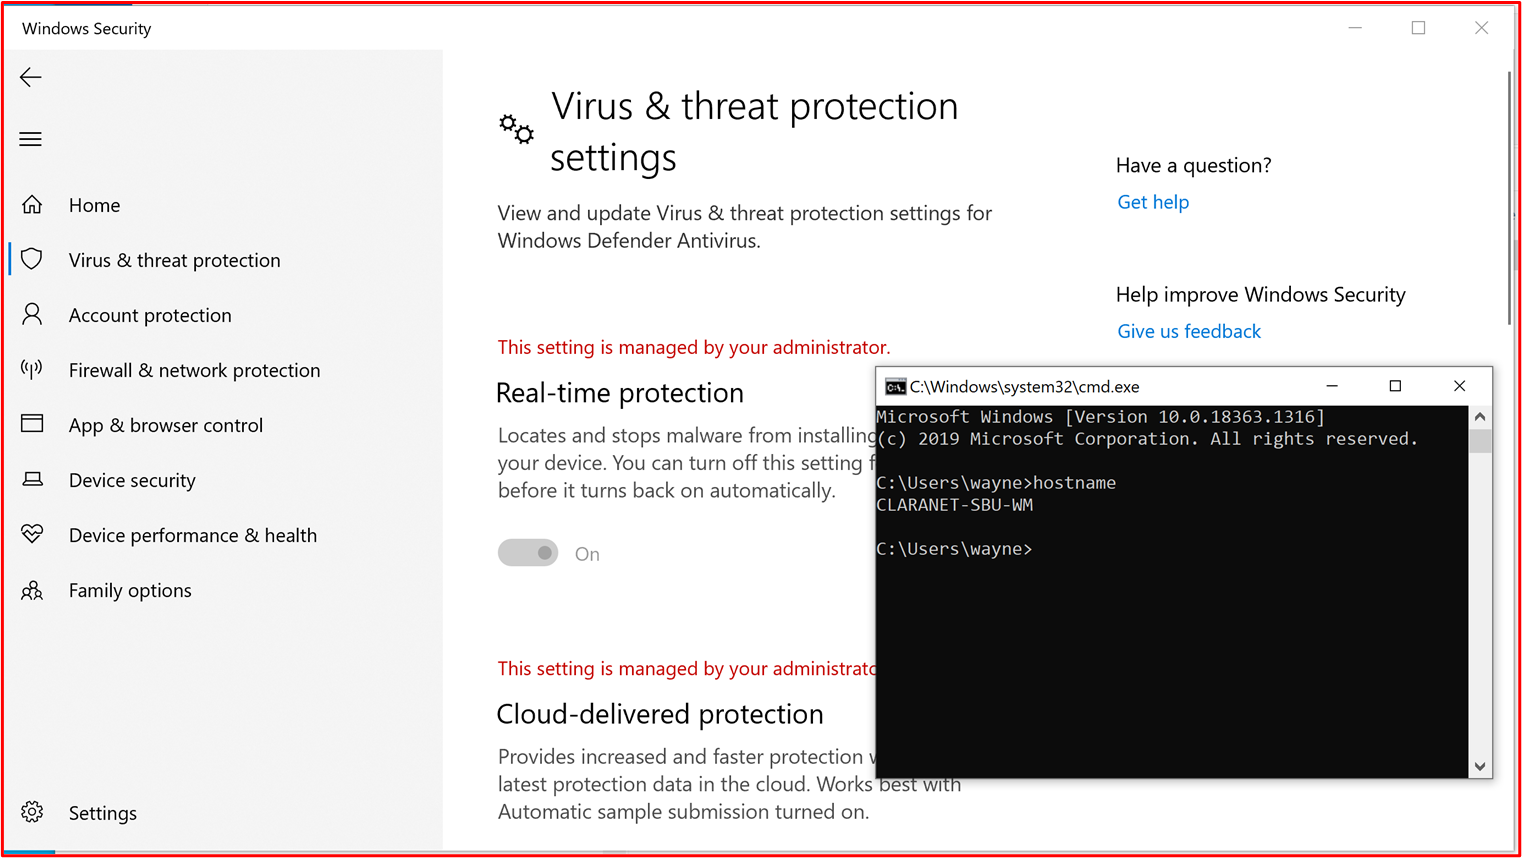 Capture d’écran de Windows 10 appareils, montrant que « Protection en temps réel » est activée